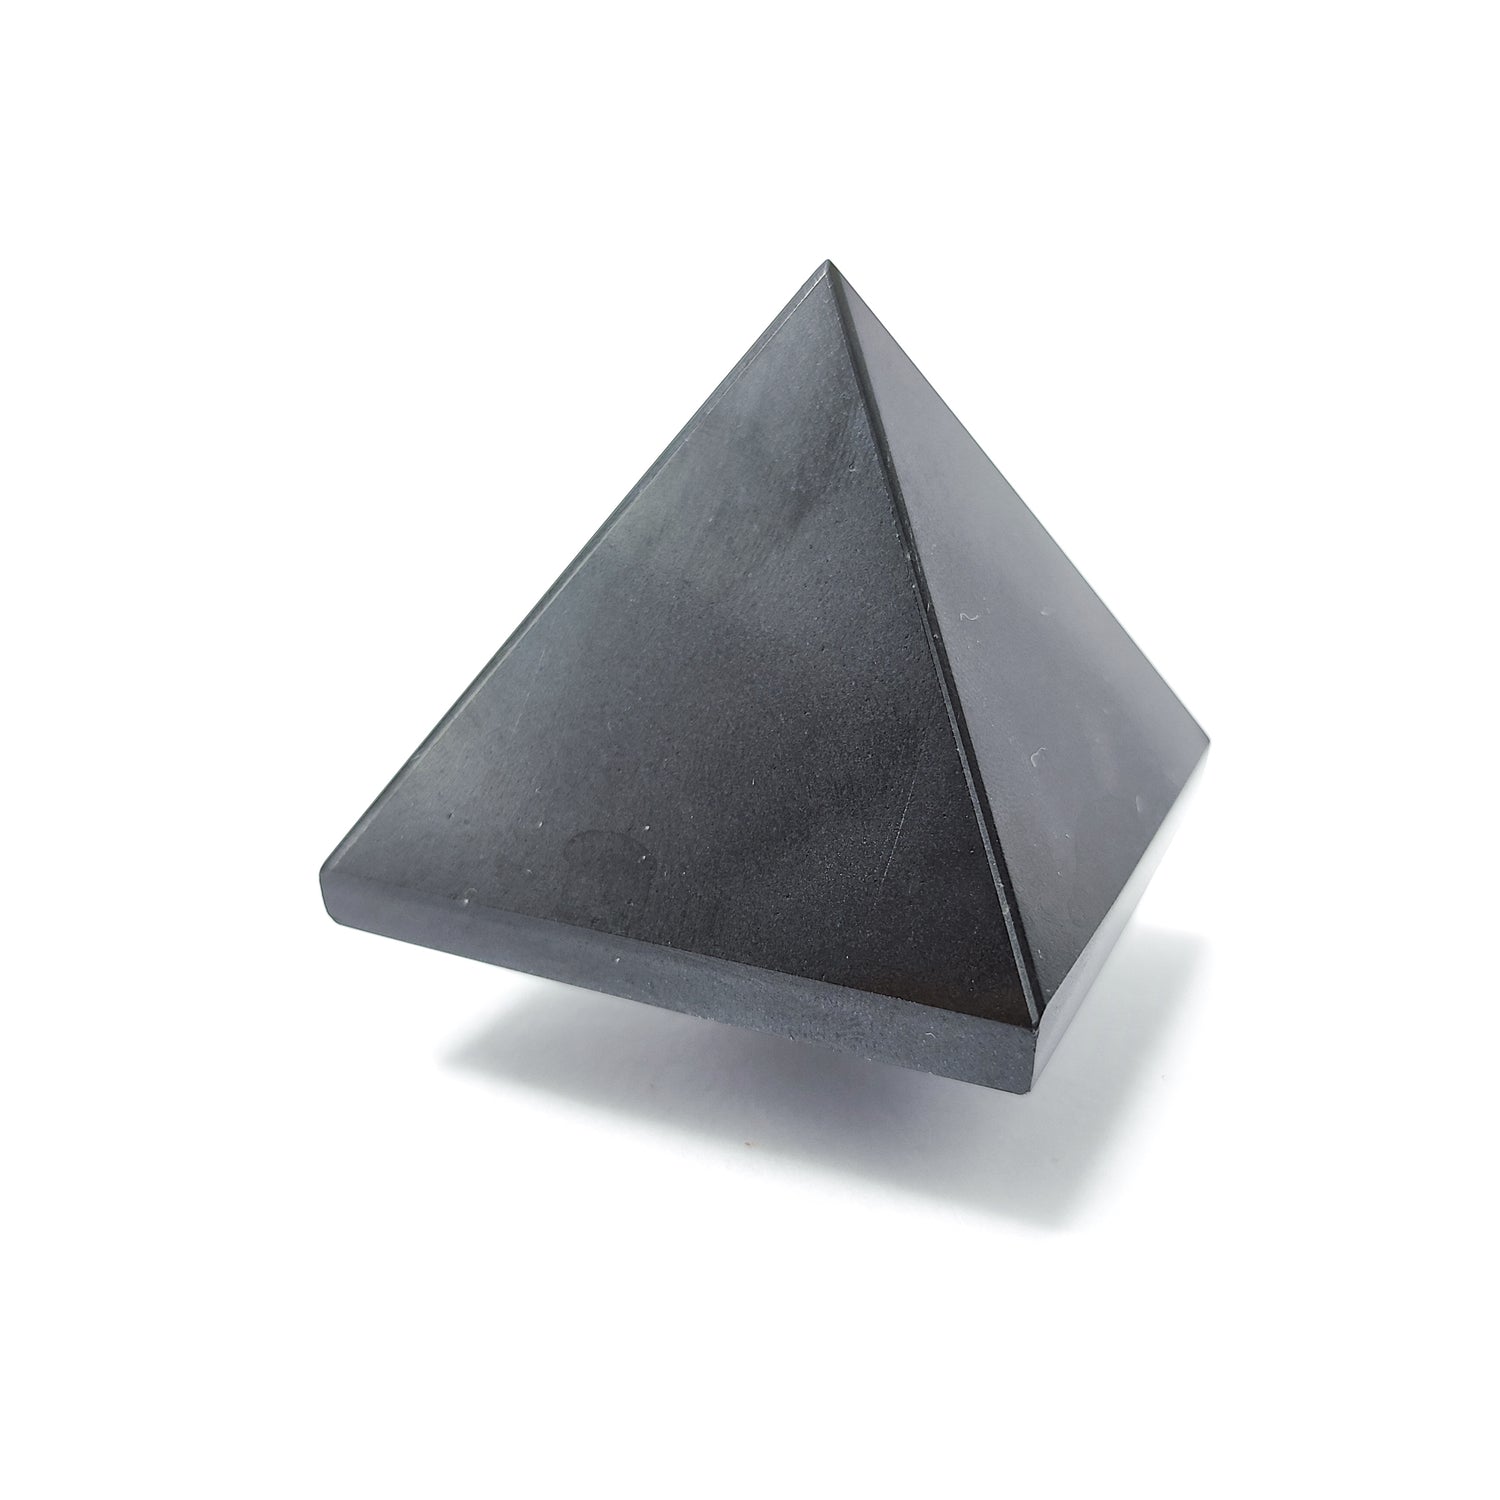 Onyx Black Pyramid